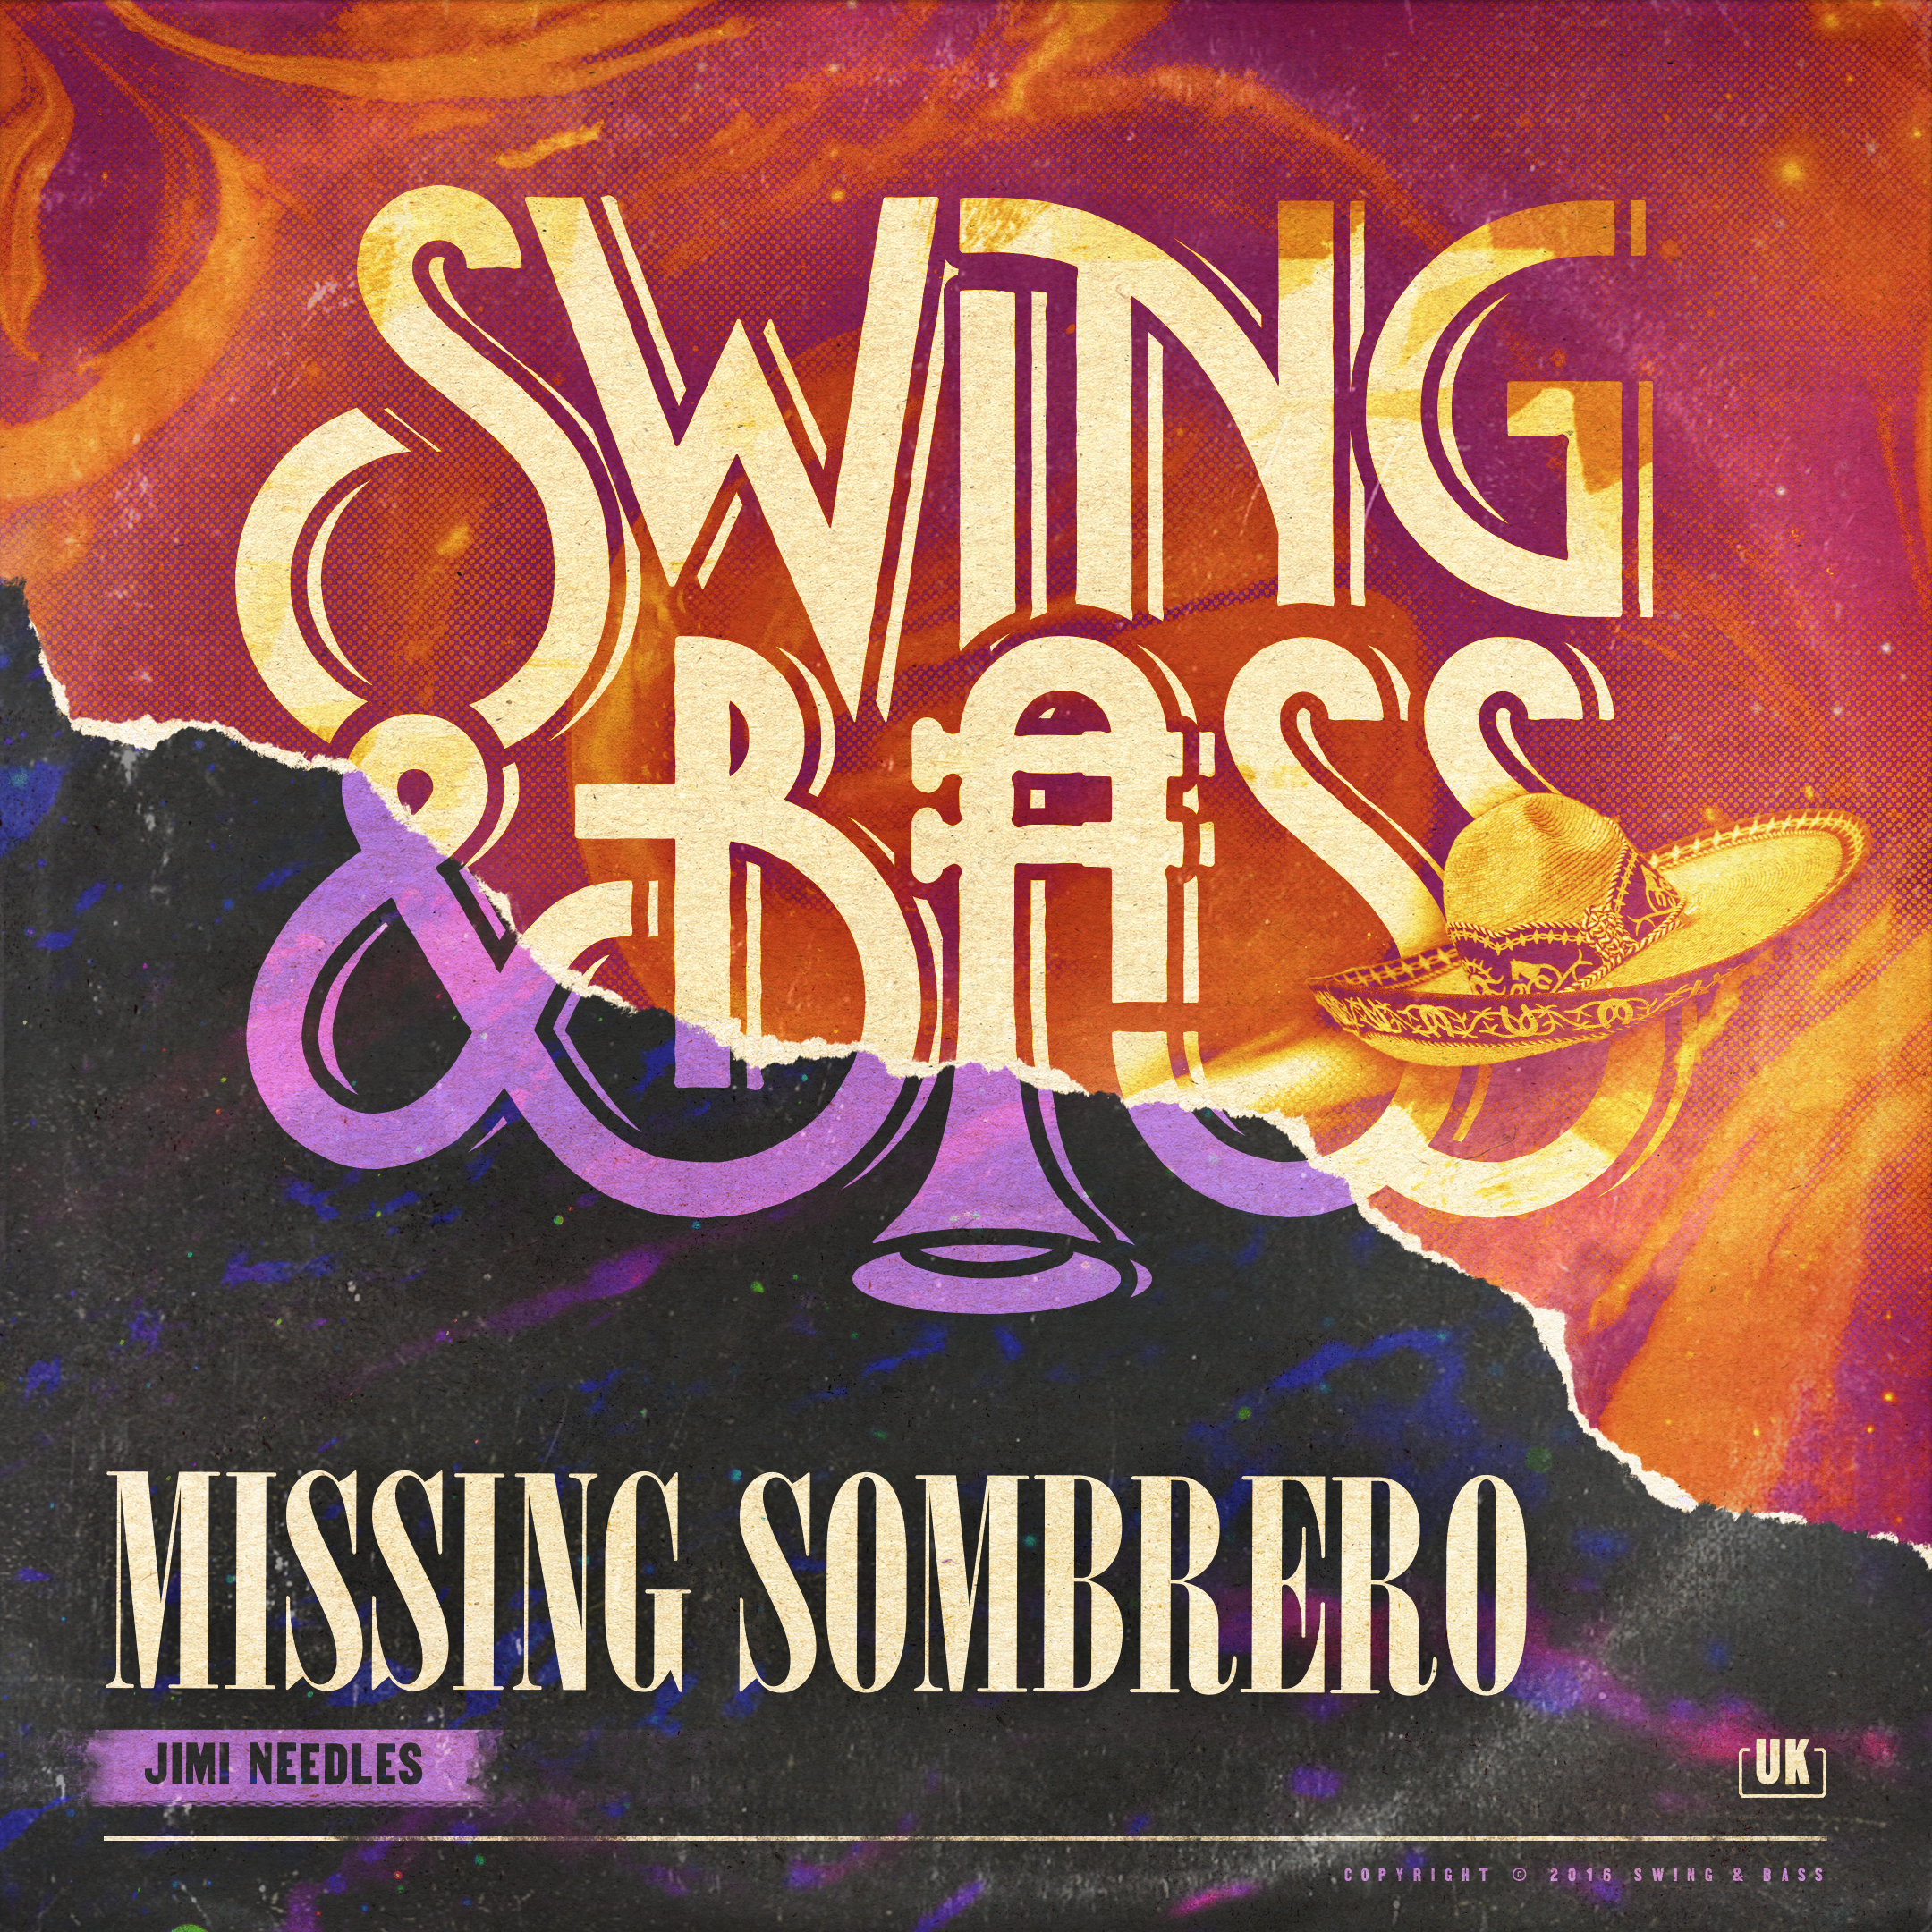 SB Jimi Needles Missing Sombreror Cover MB V2